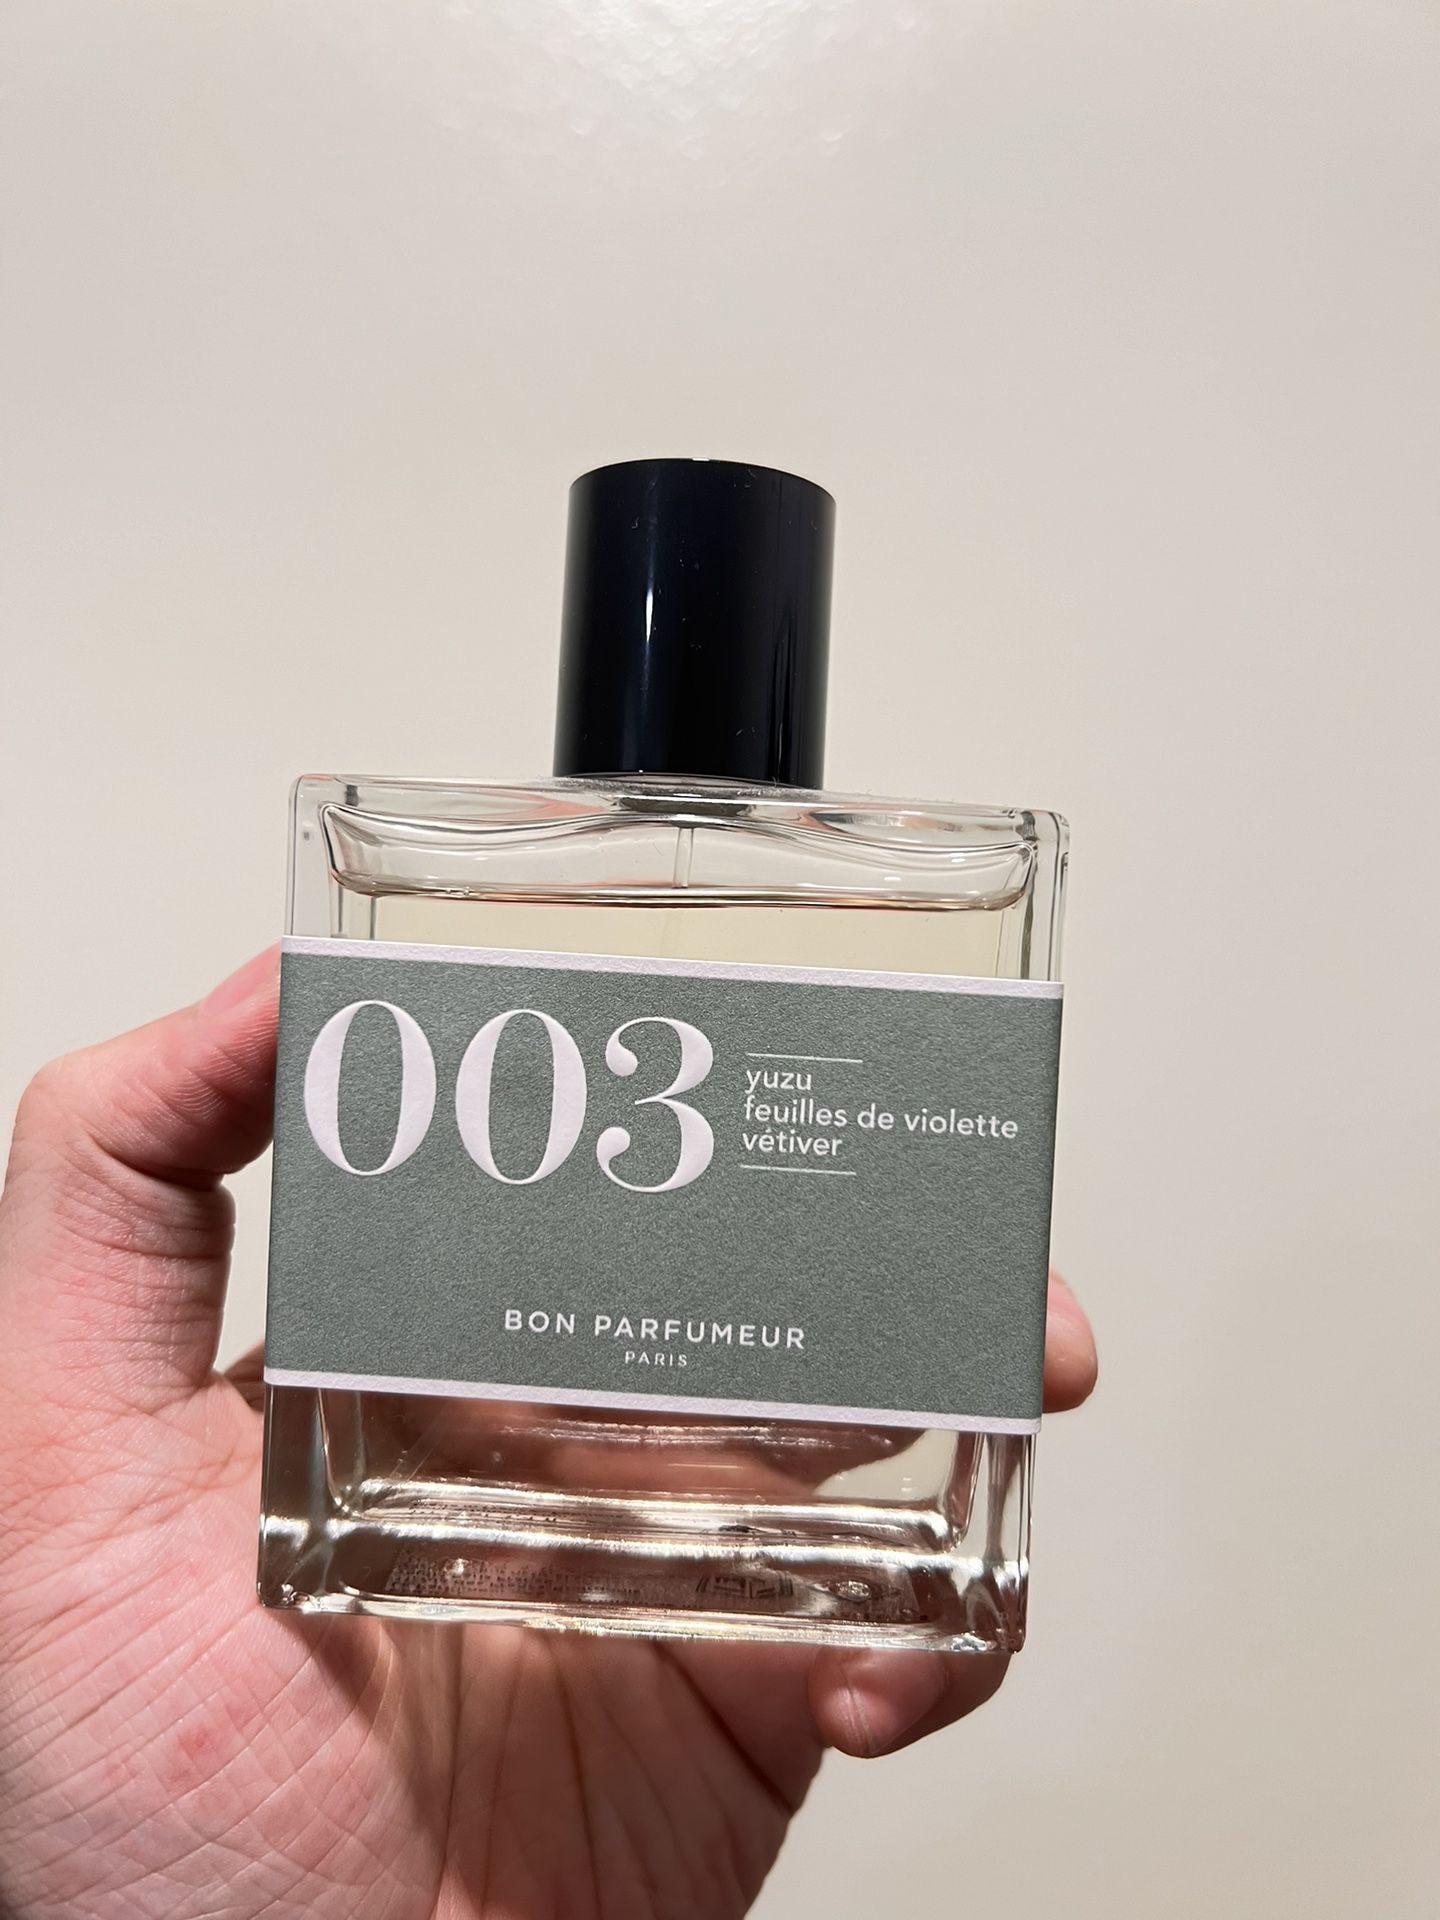 Bon Parfumeur 003 Fragrance